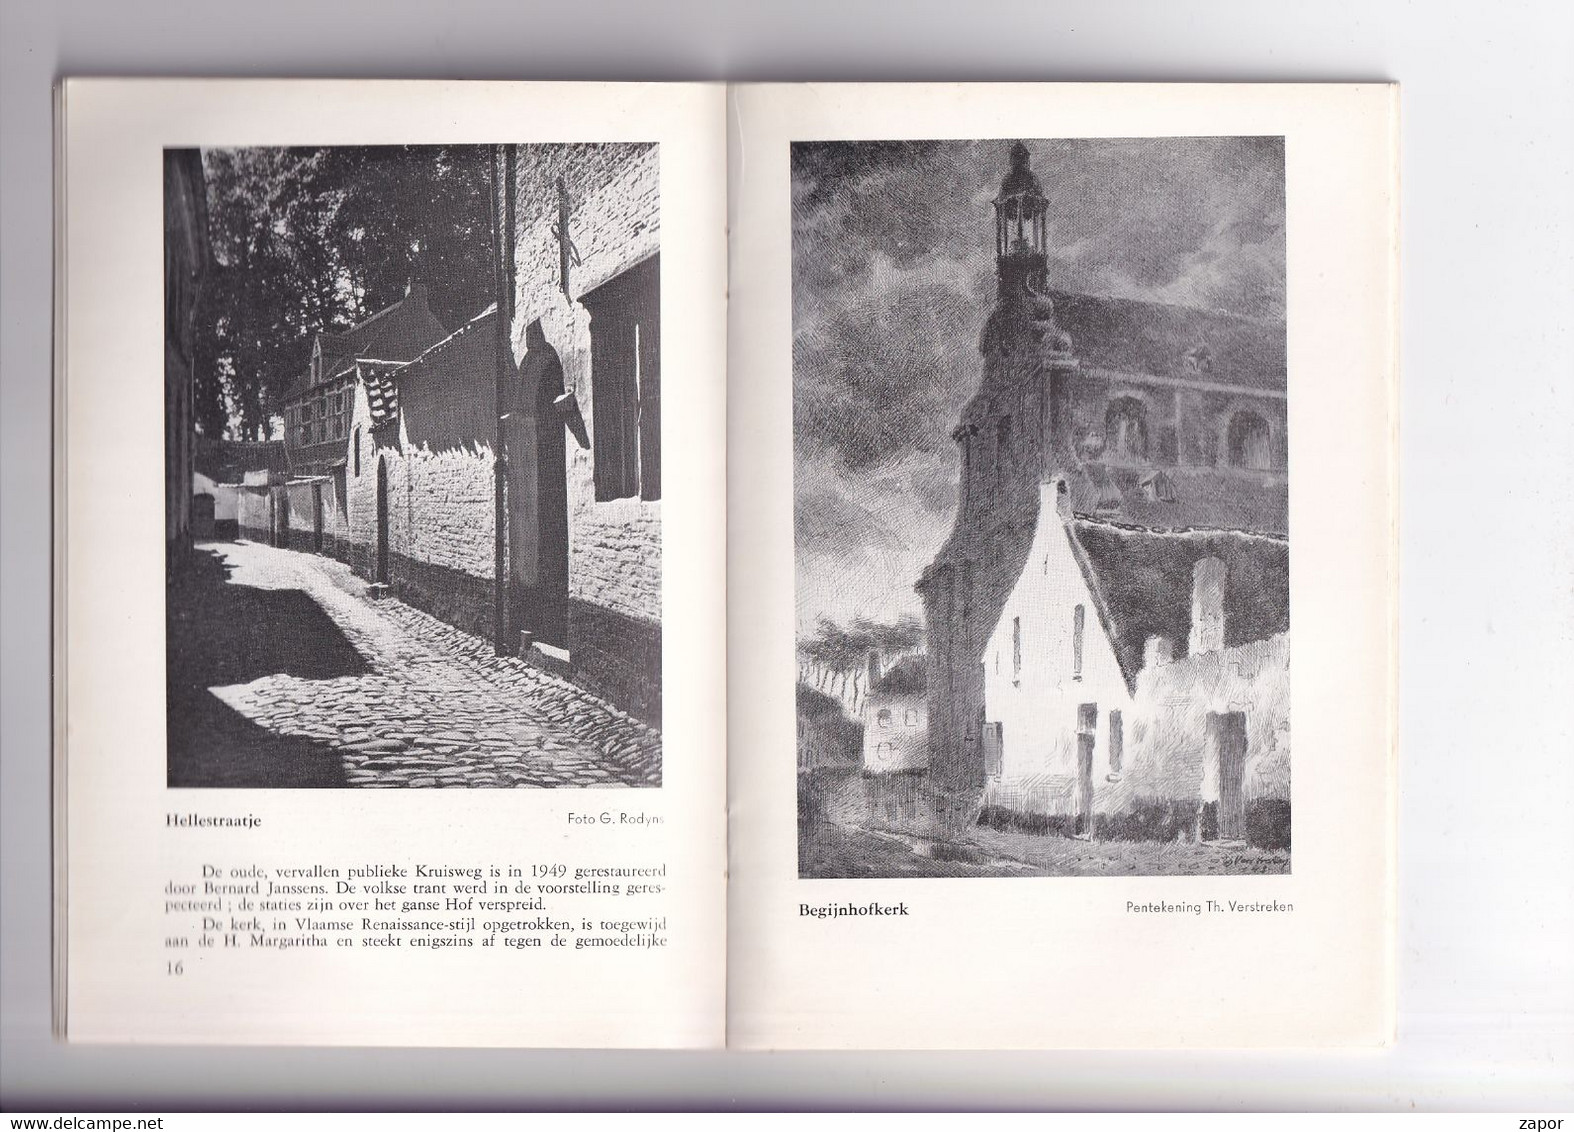 Lier - Gids Voor De Toerist - Boekje Van 36p - 1950 - Frans Verstreken - Tourisme